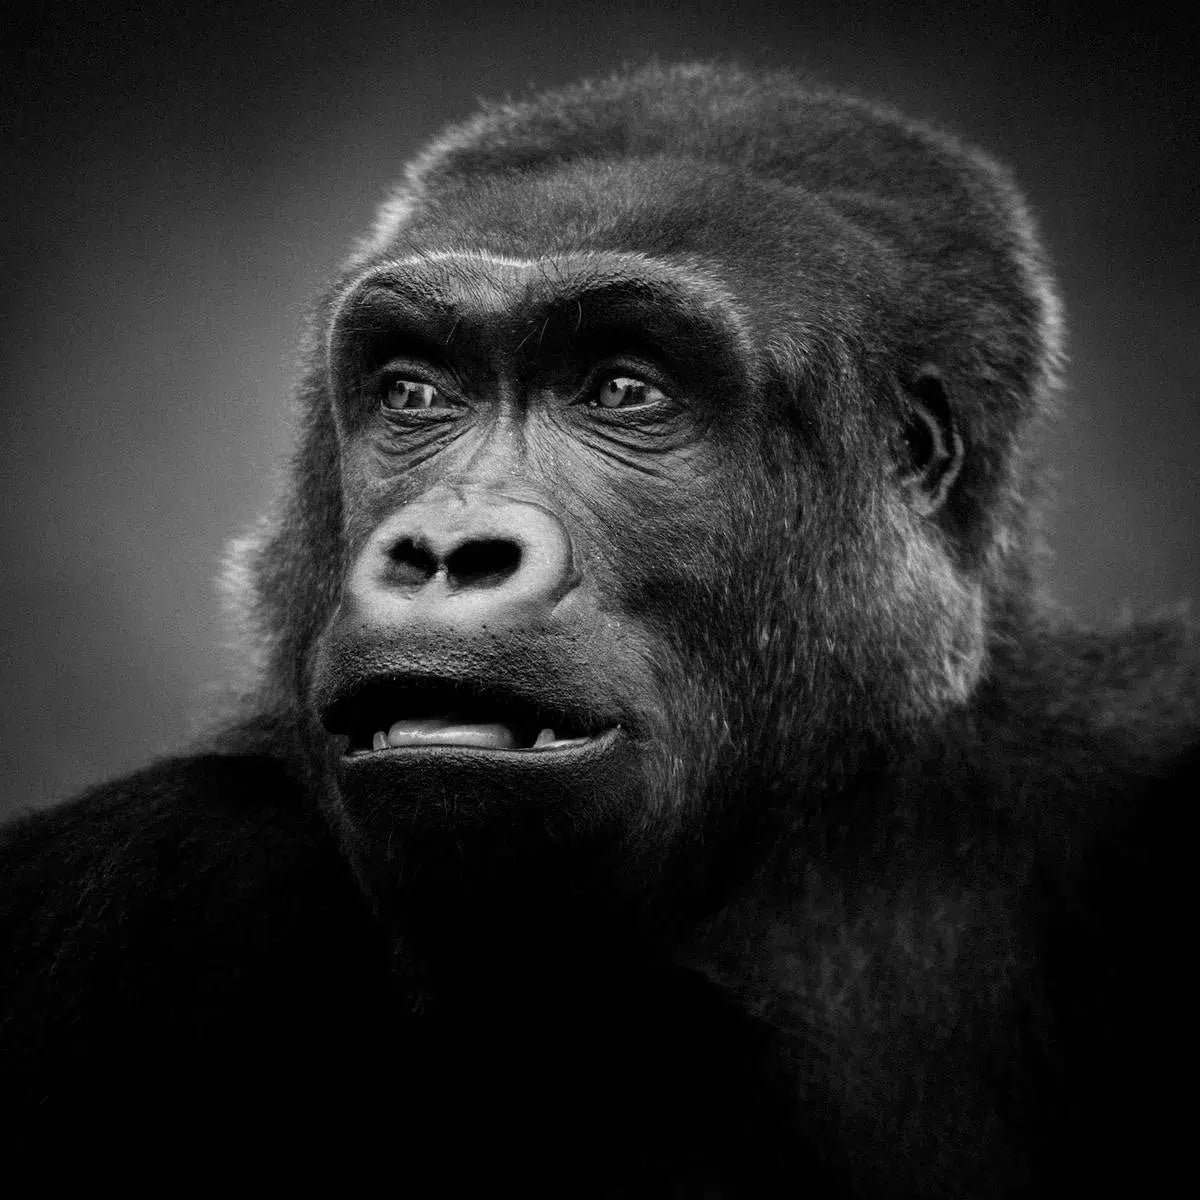 Portrait of a Gorilla, by Laurent Baheux-PurePhoto